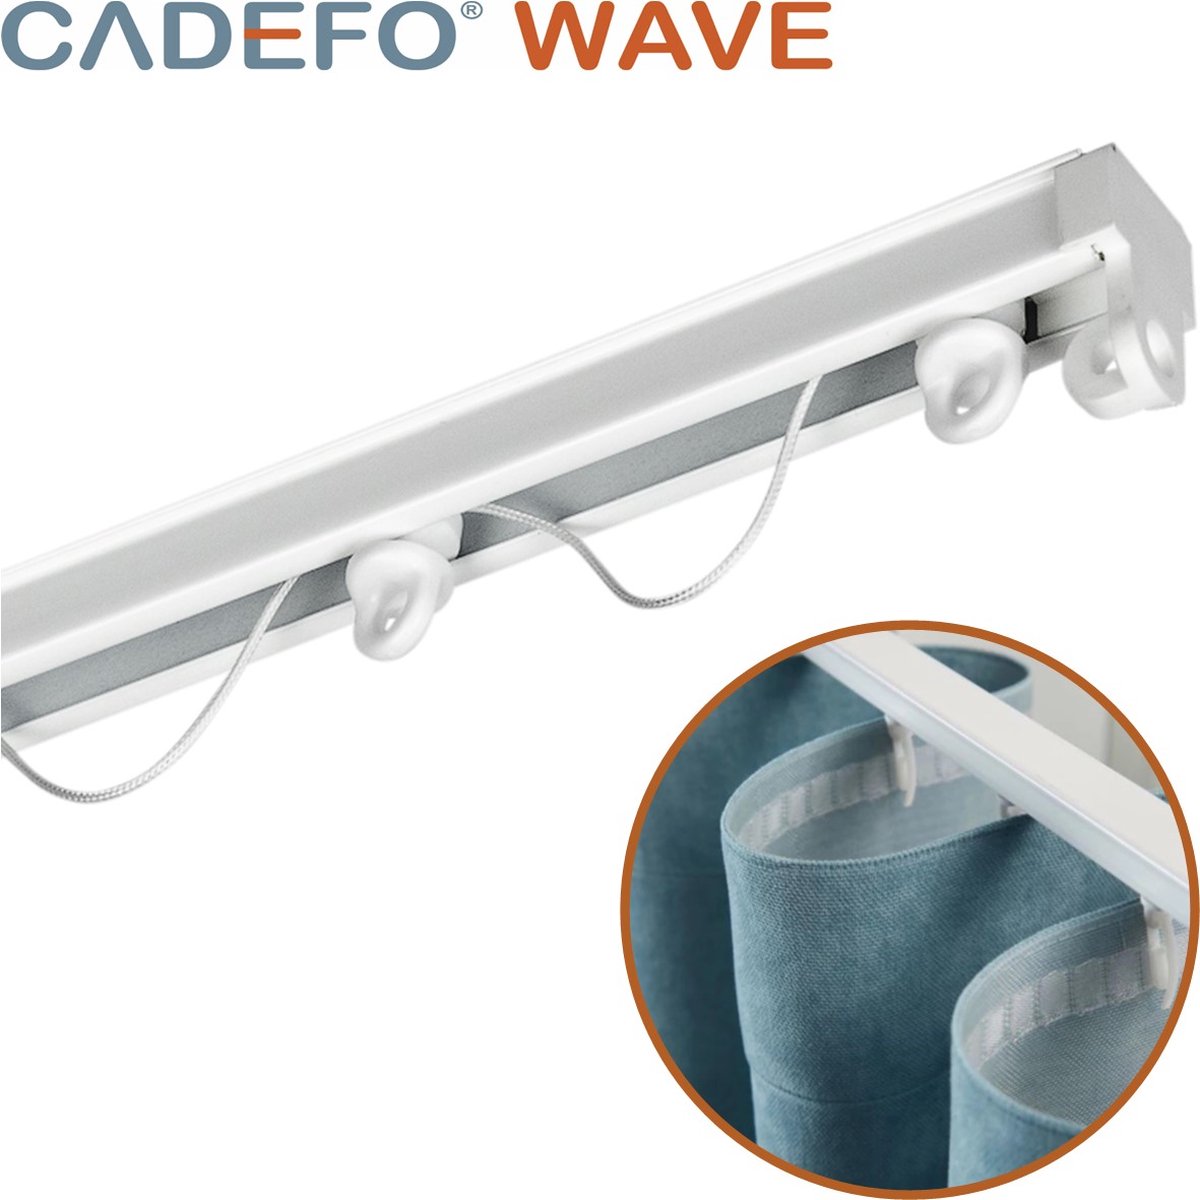 CADEFO WAVE (251 - 300 cm) Gordijnrails - Compleet op maat! - UIT 1 STUK - Leverbaar tot 6 meter - Plafondbevestiging - Lengte 257 cm